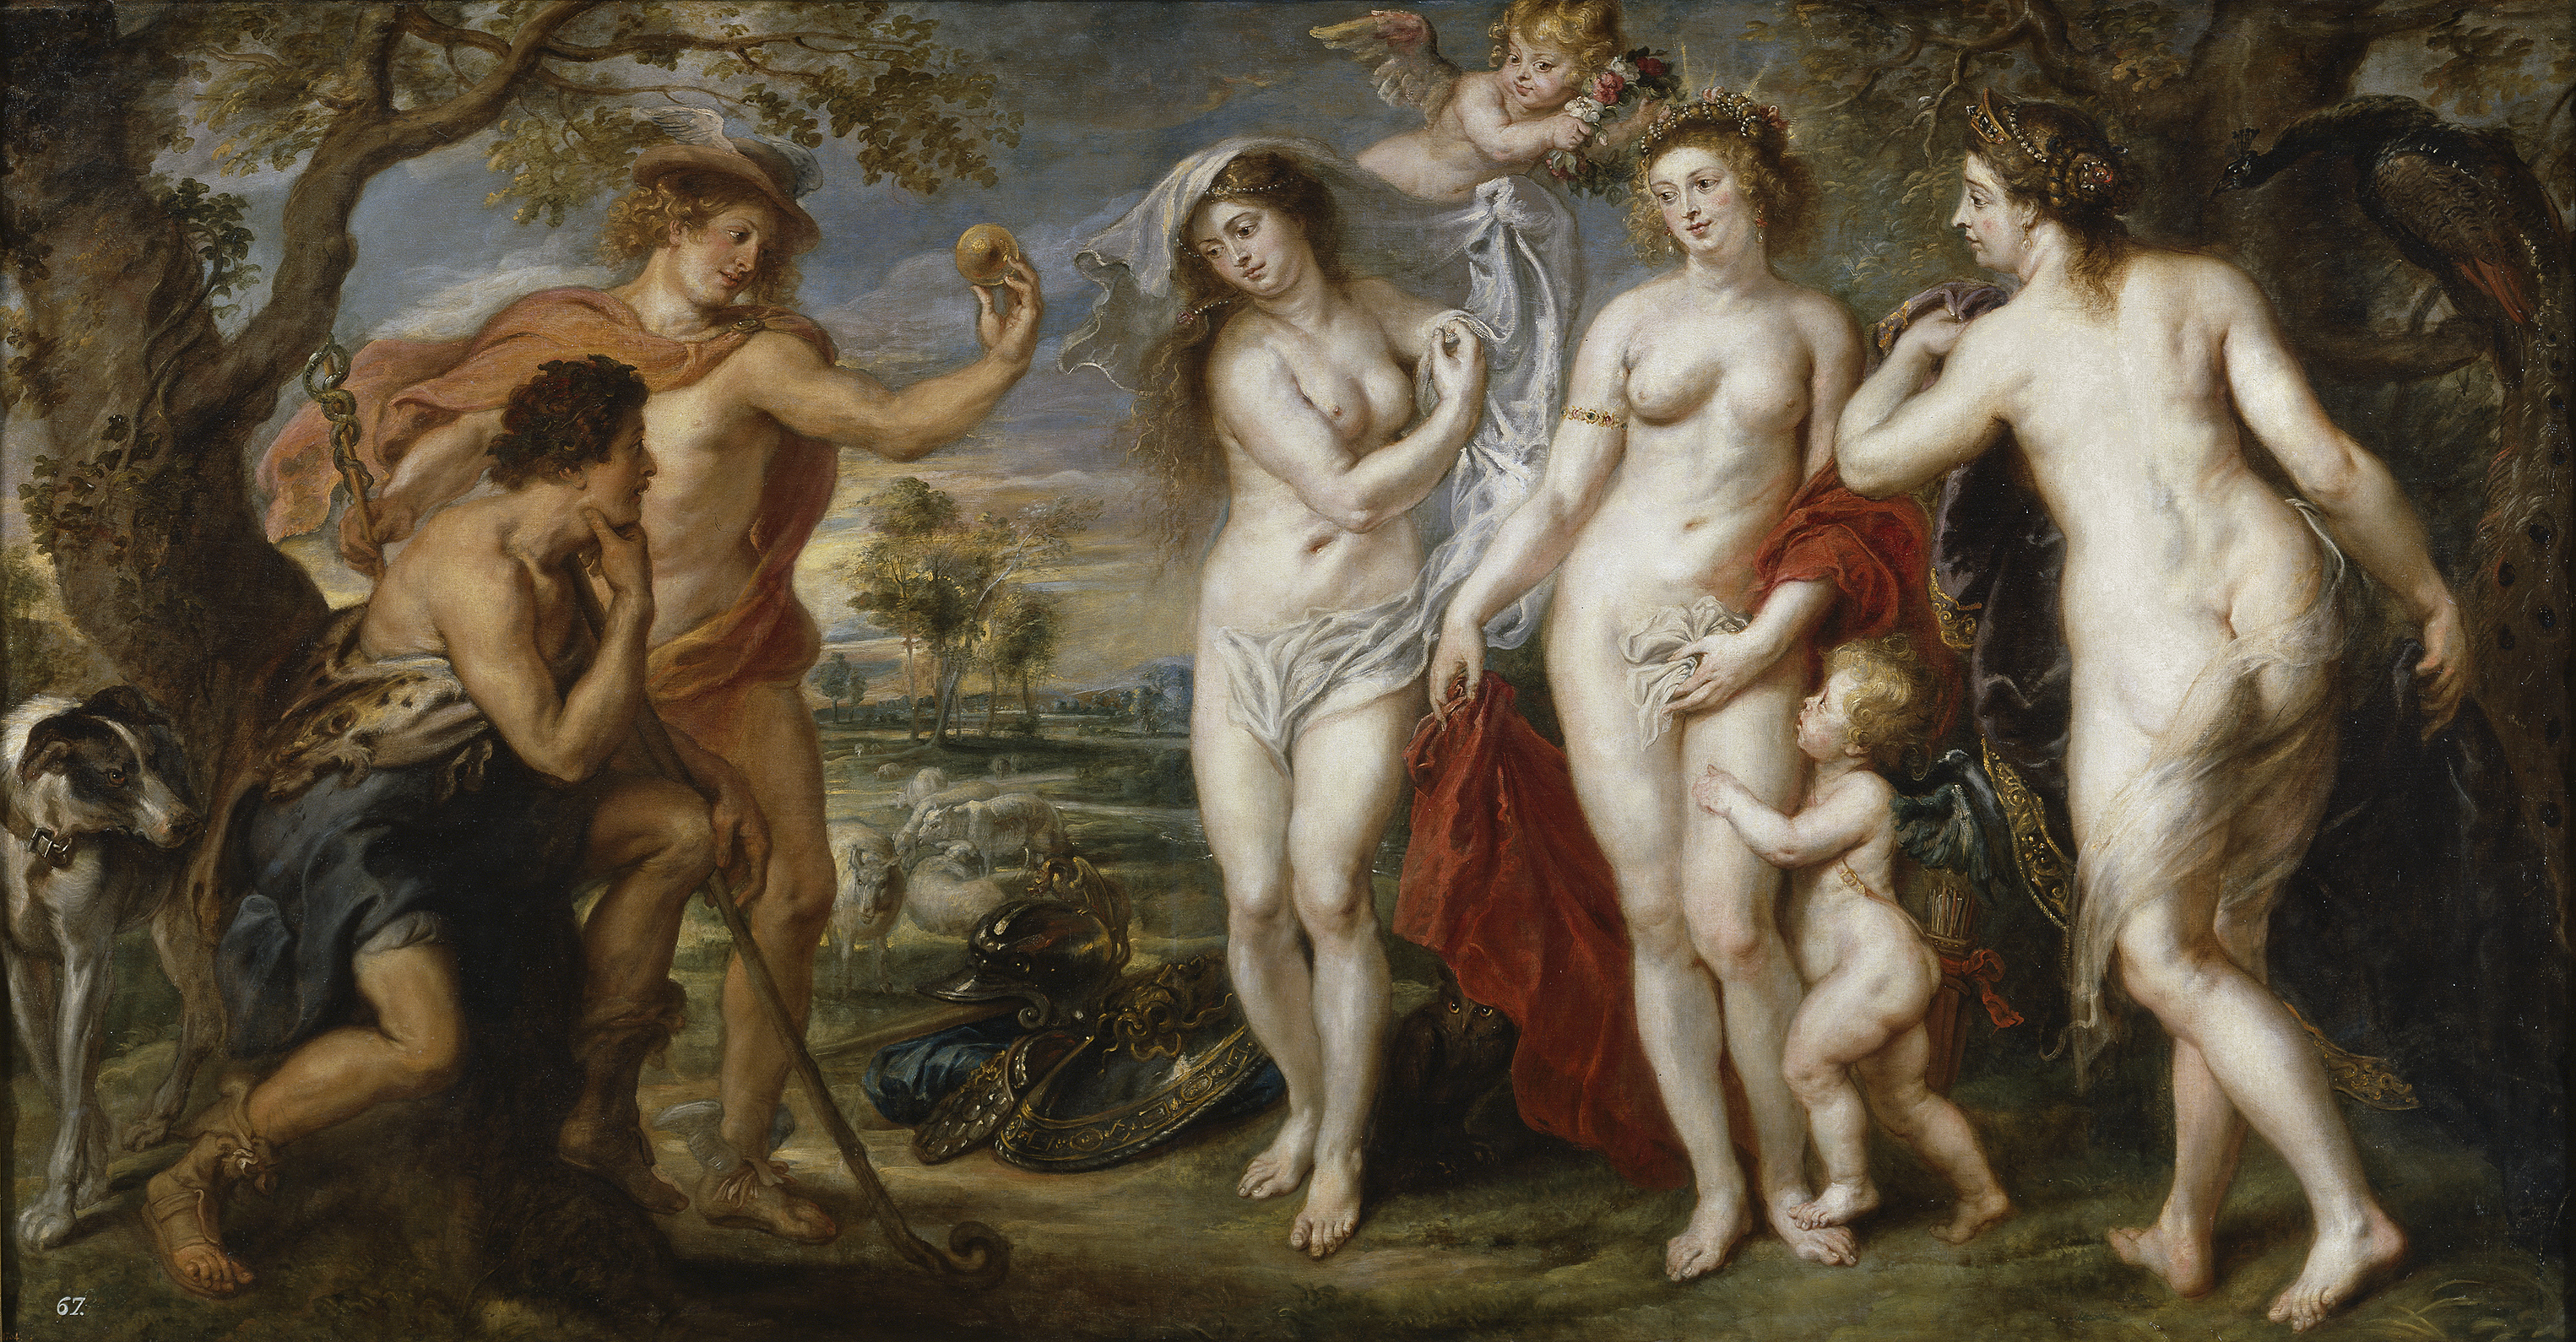 Sexo aberrante y familias disfuncionales en la mitología griega imagen